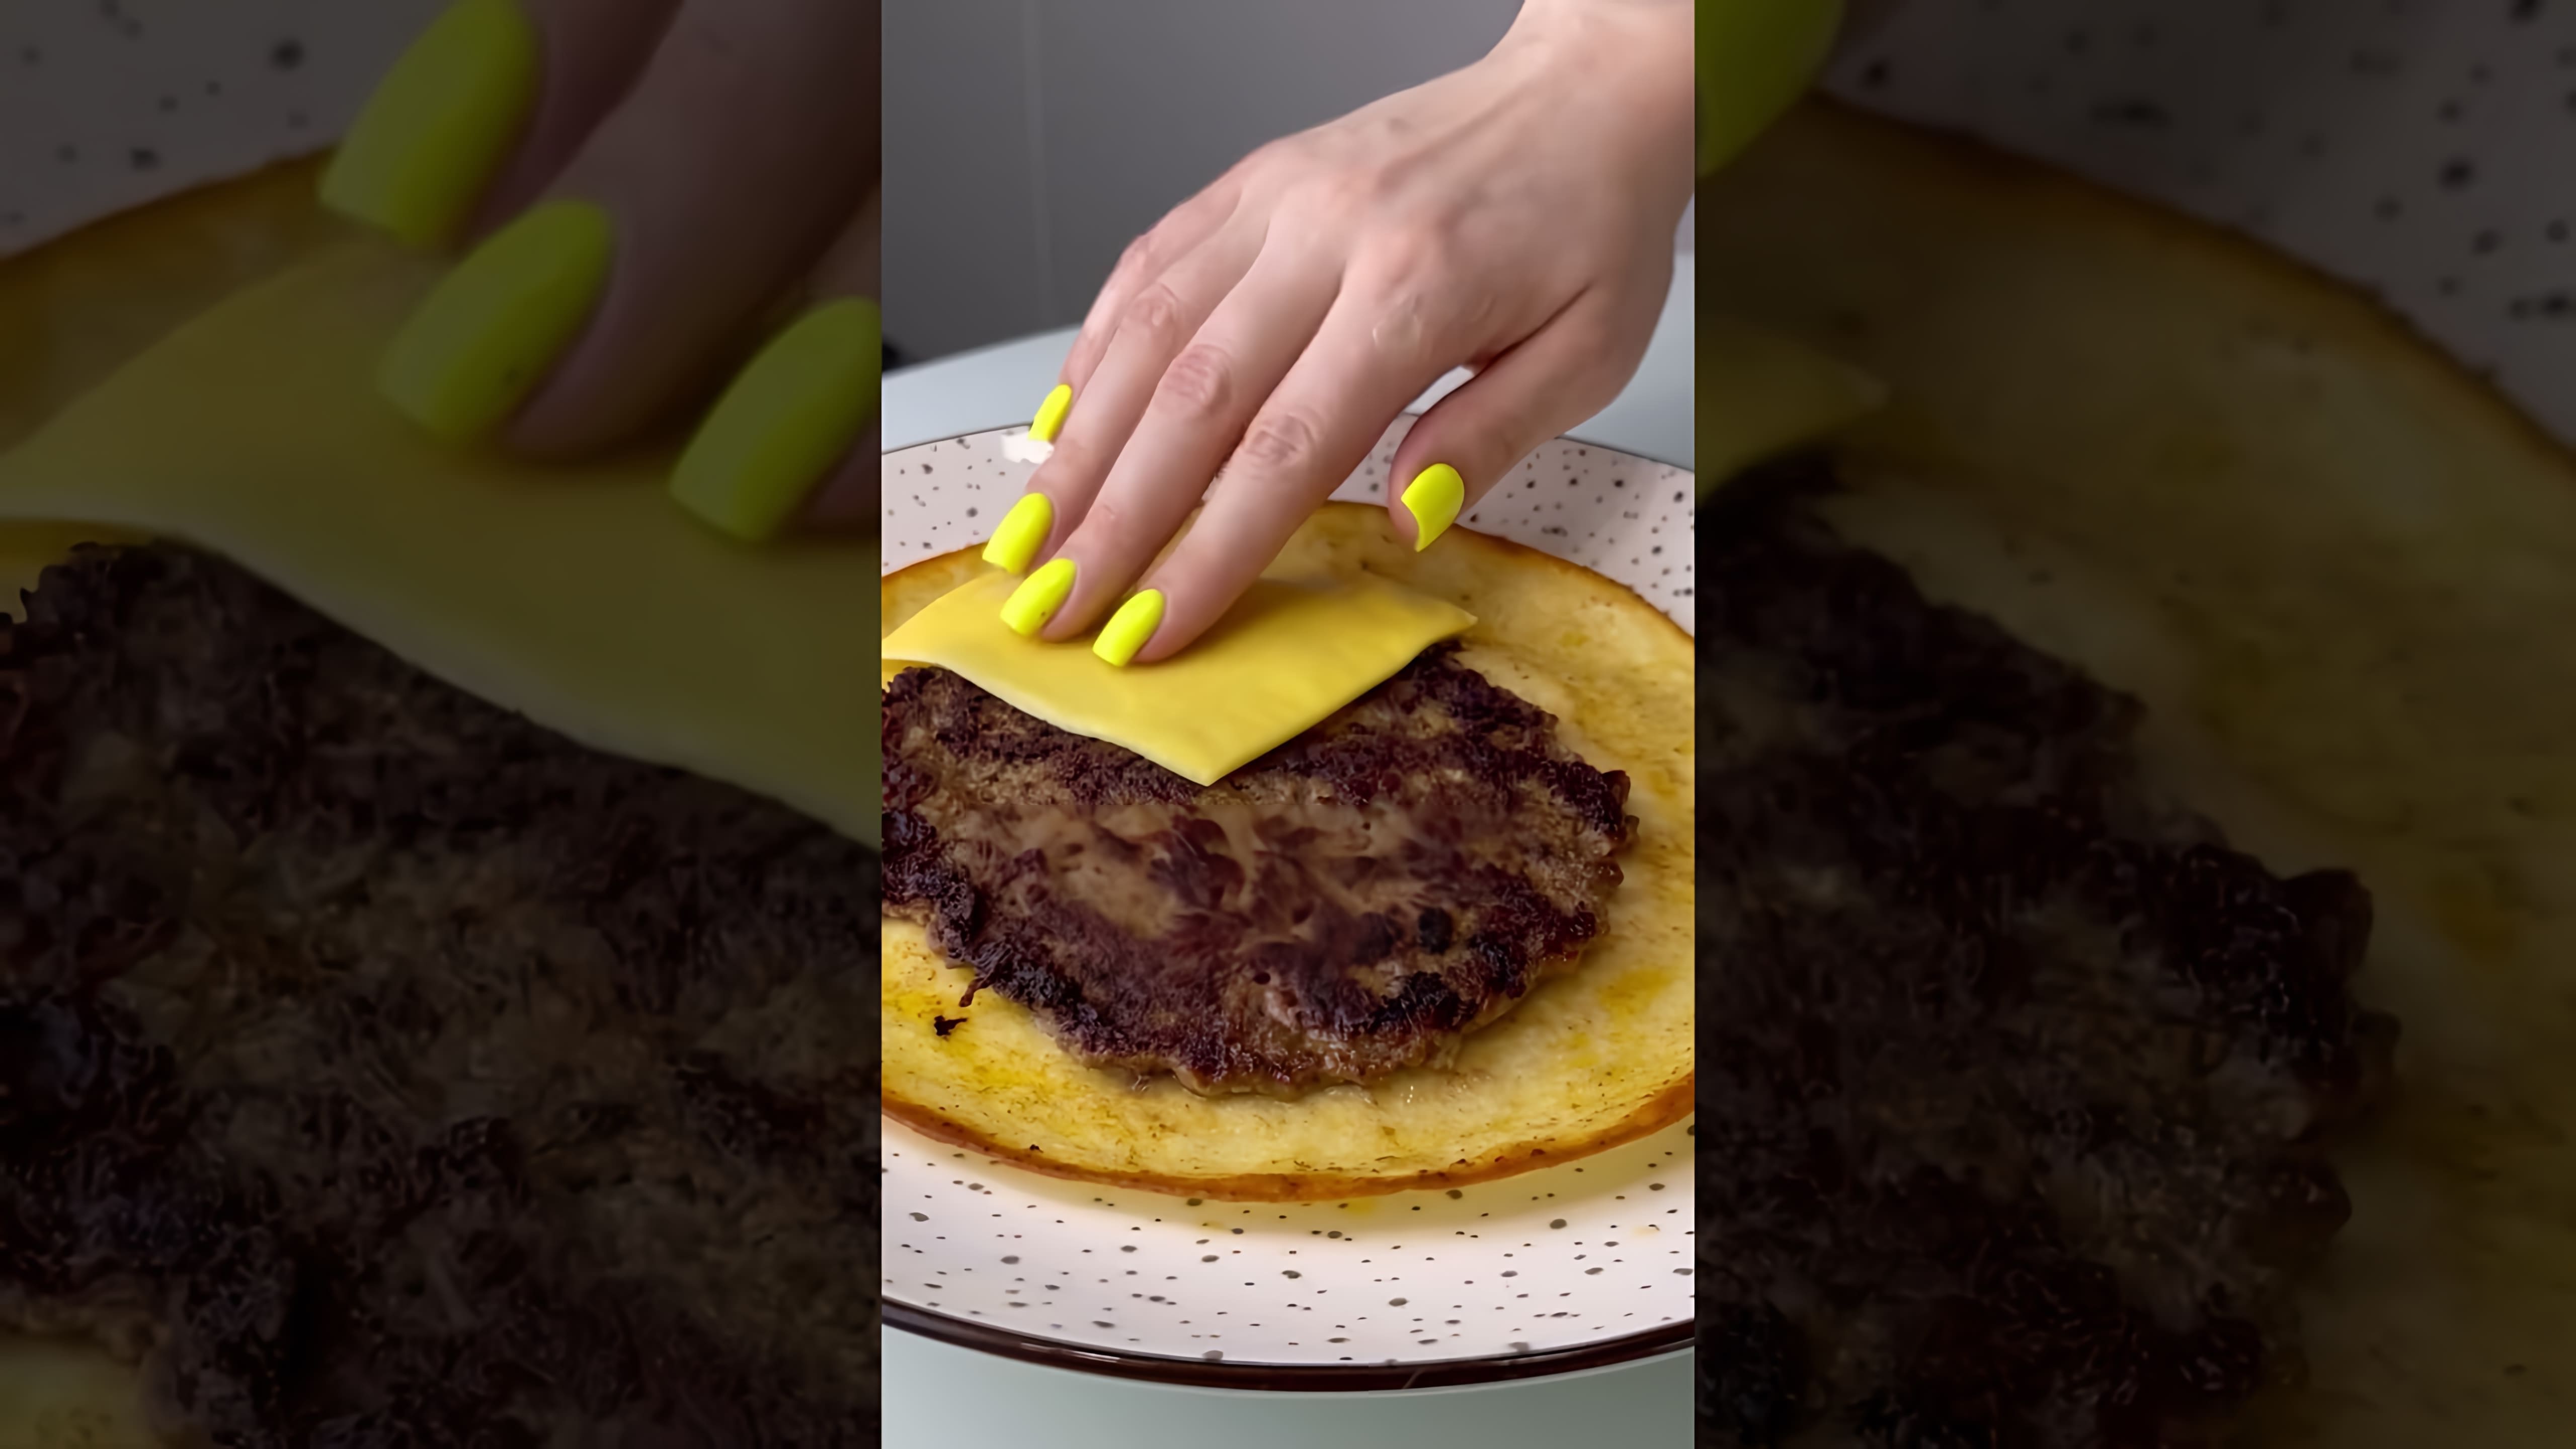 В этом видео демонстрируется рецепт приготовления тортилья бургера за 10 минут